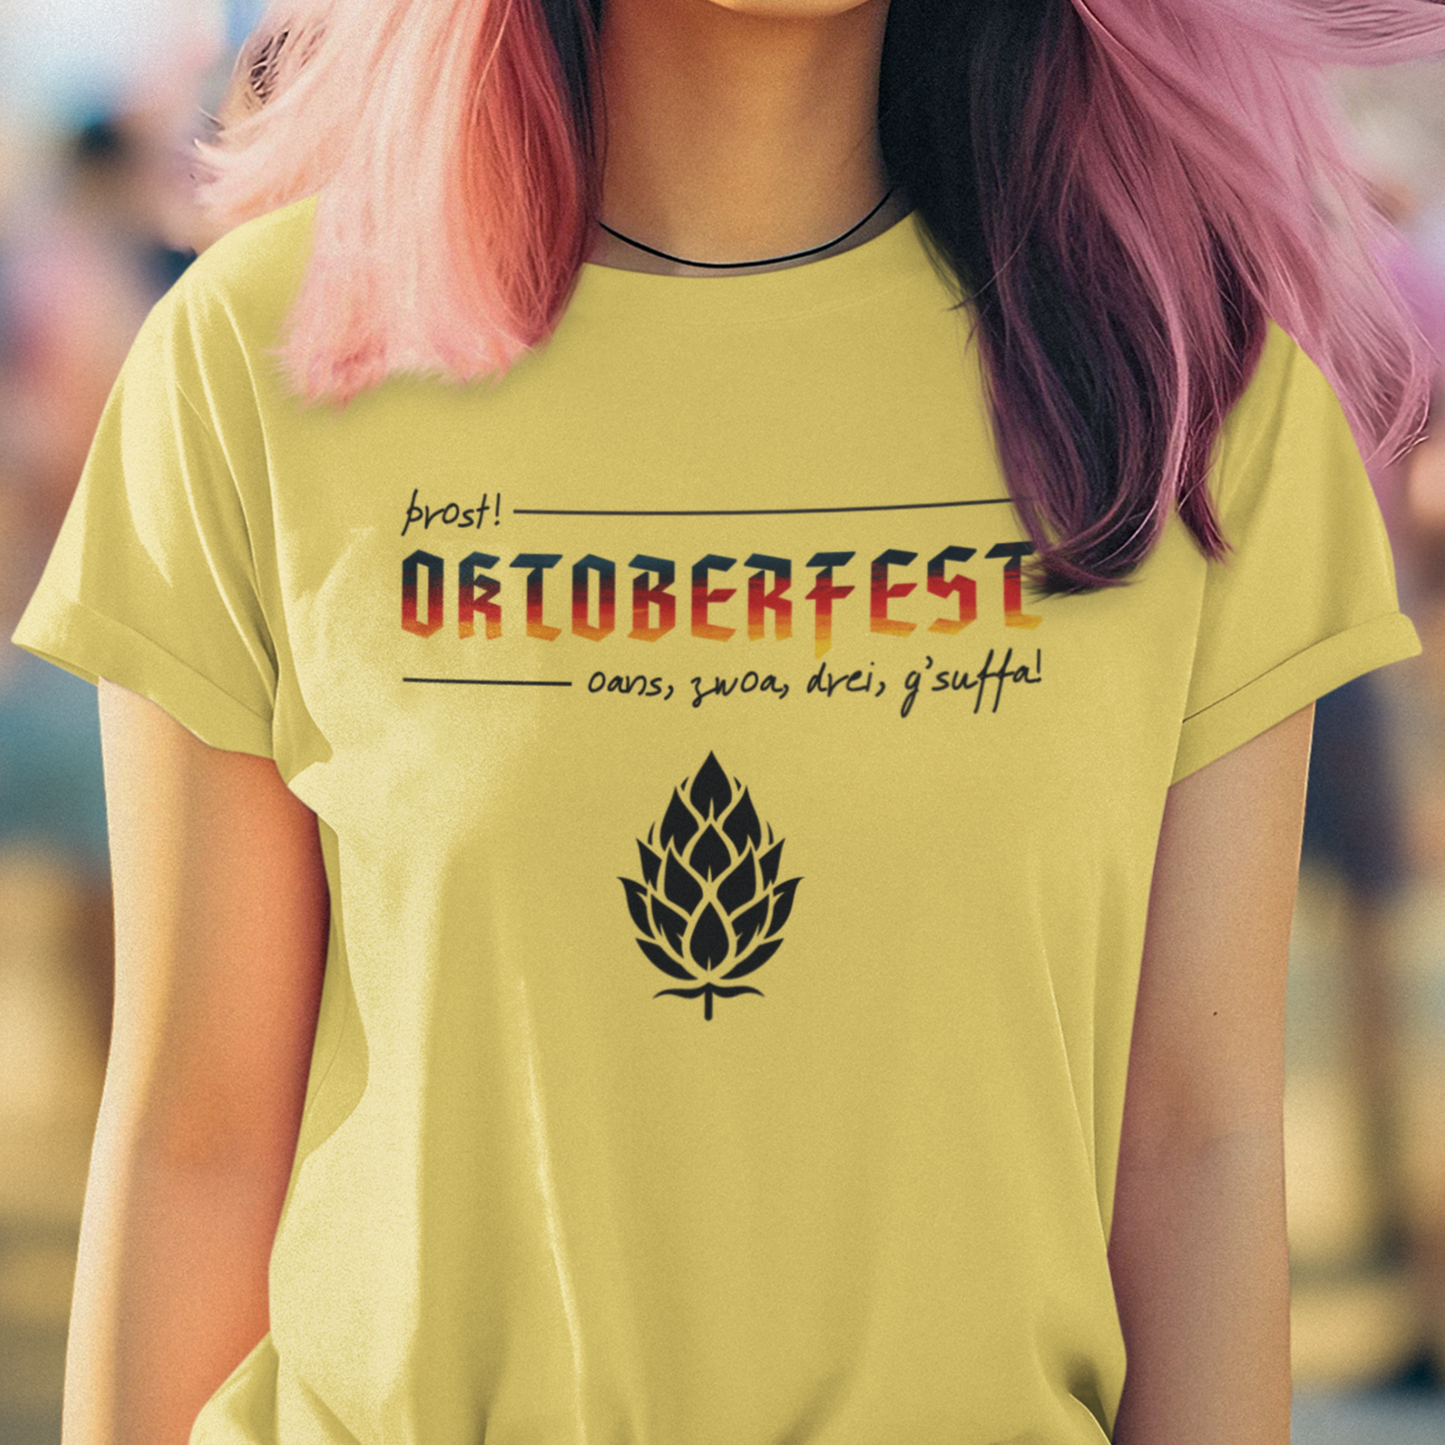 Oktoberfest Shirt, Beer Lover Shirt, September Shirt, October Shirt, October Fest Shirt, Craft Beer Shirt, German Shirt, Drinking Shirt